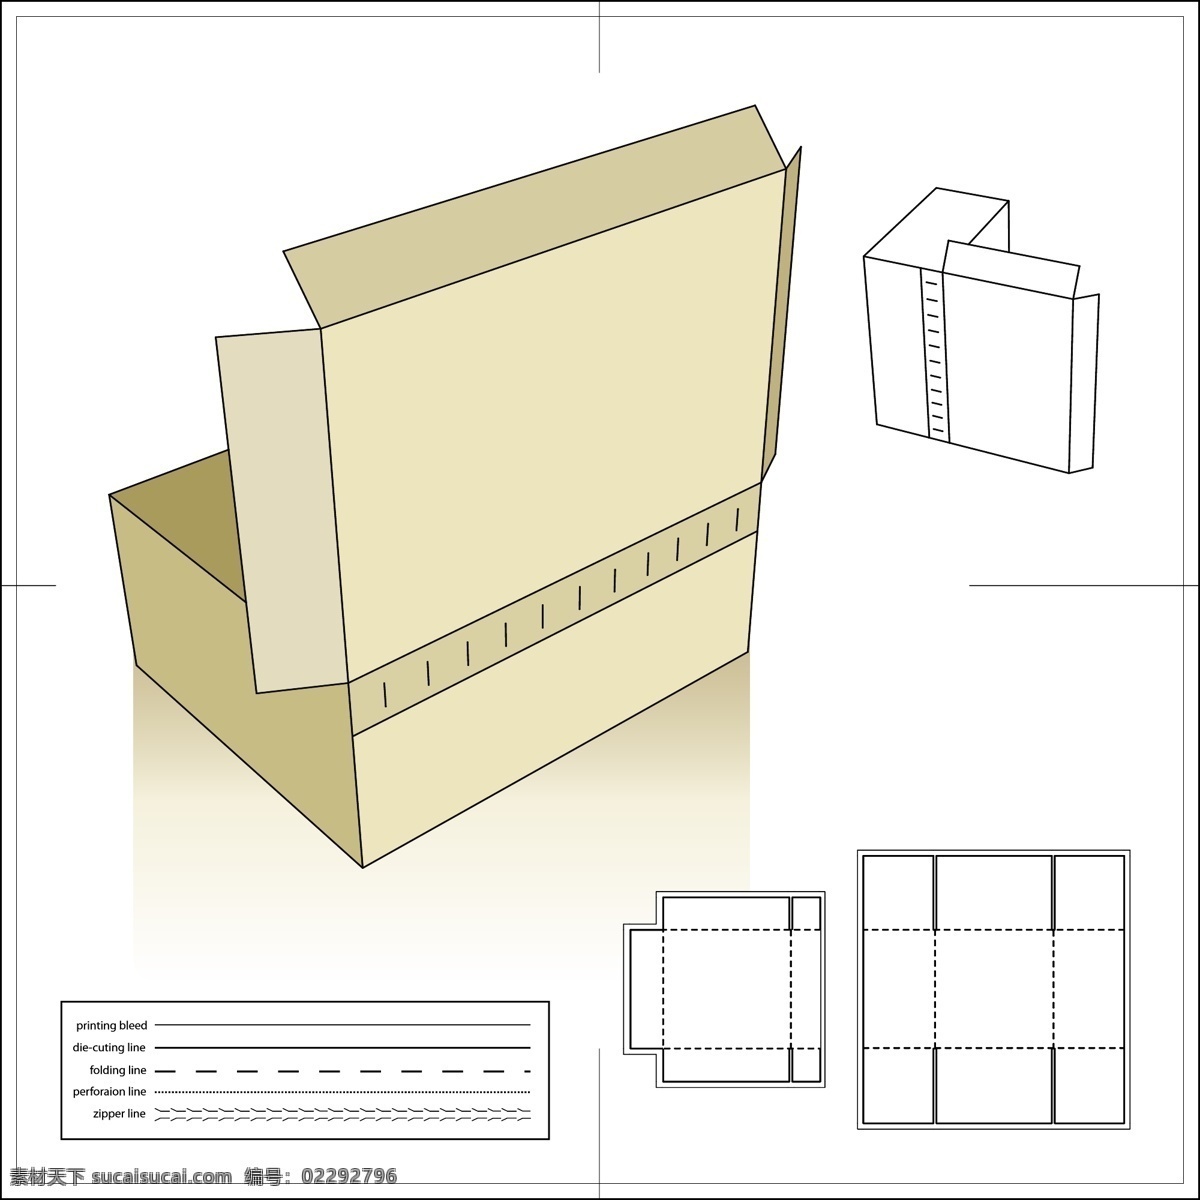 鞋盒 包装纸 模型 鞋盒包装 包装 展开 图 横切 稿 矢量图